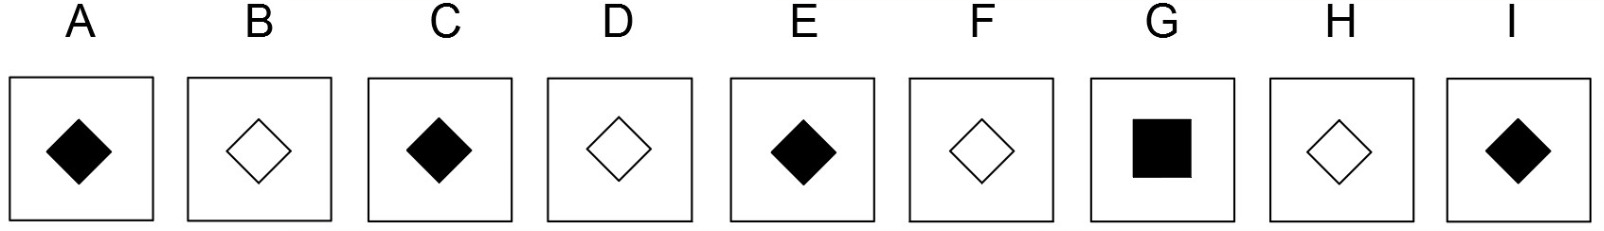 Exemple de question de raisonnement abstrait (cut-e scales ix)